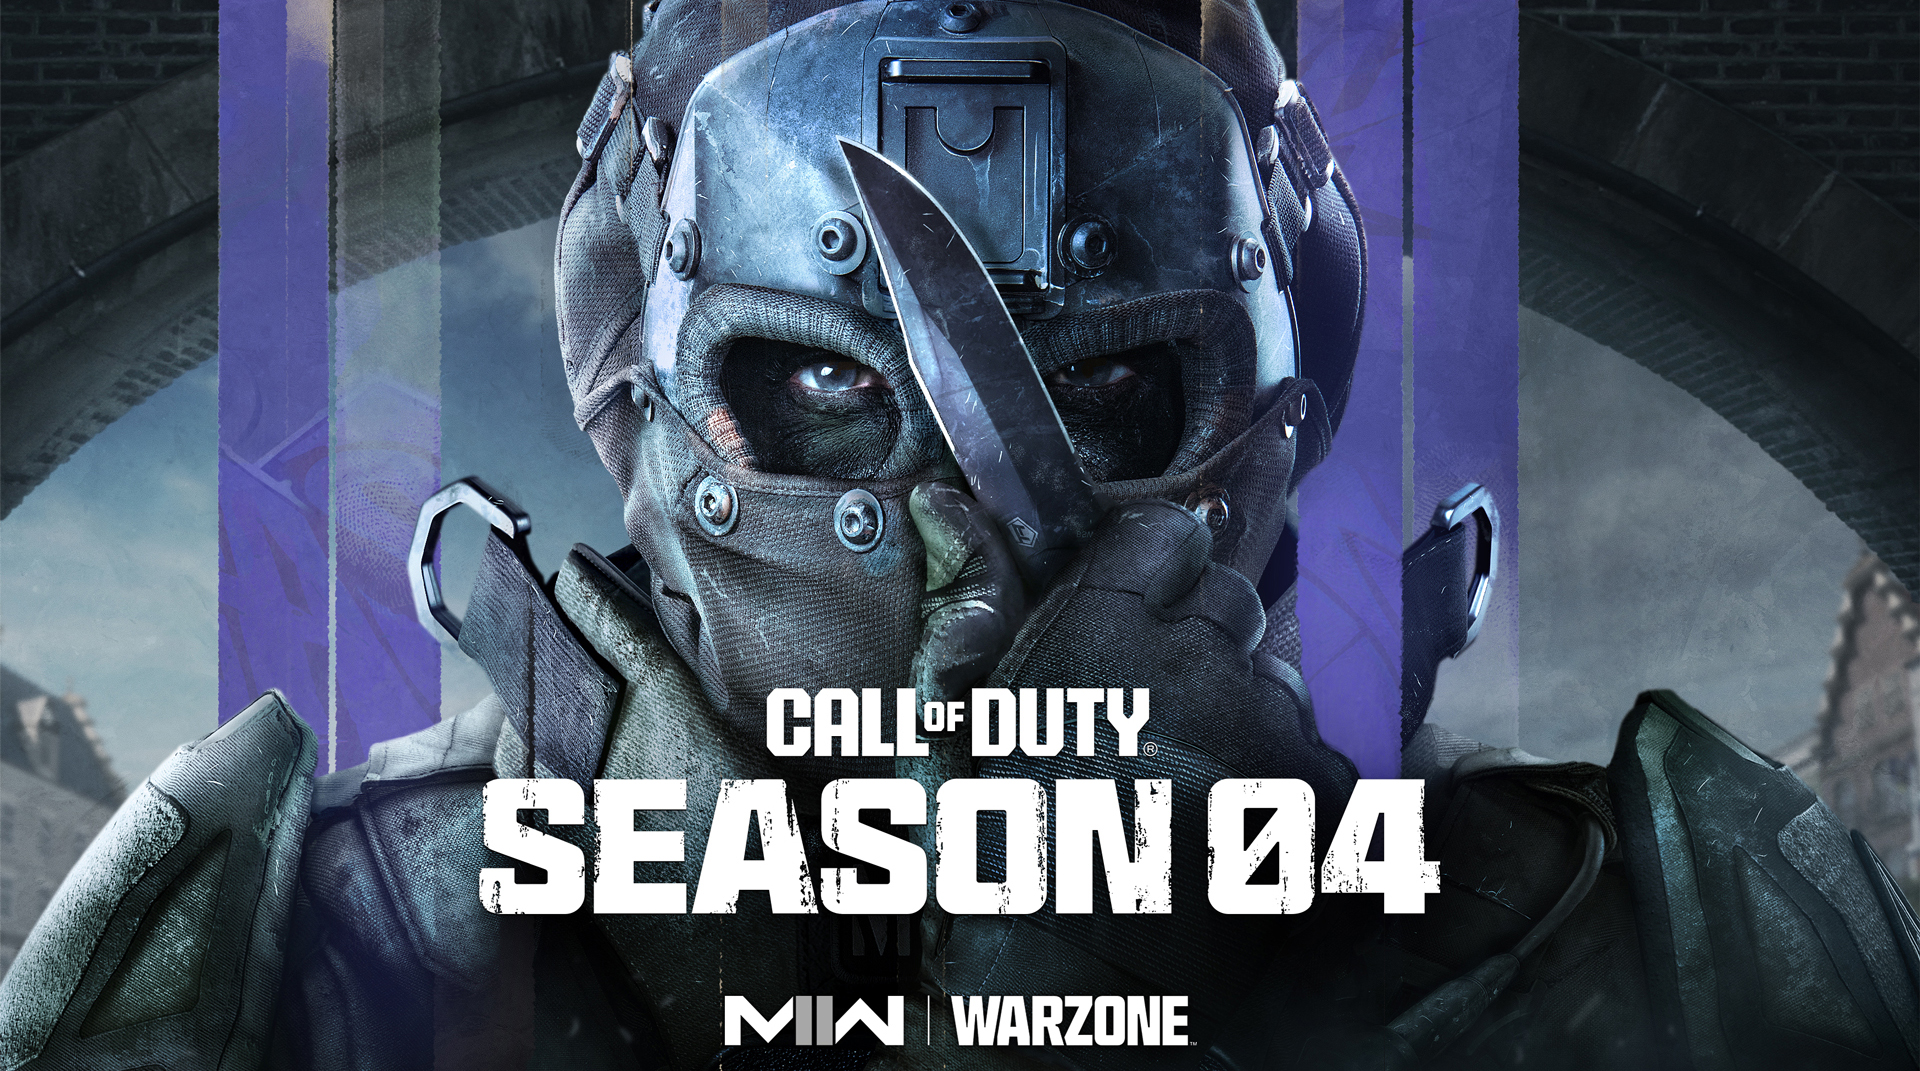 Call of Duty® Modern Warfare 2.0 Season 02